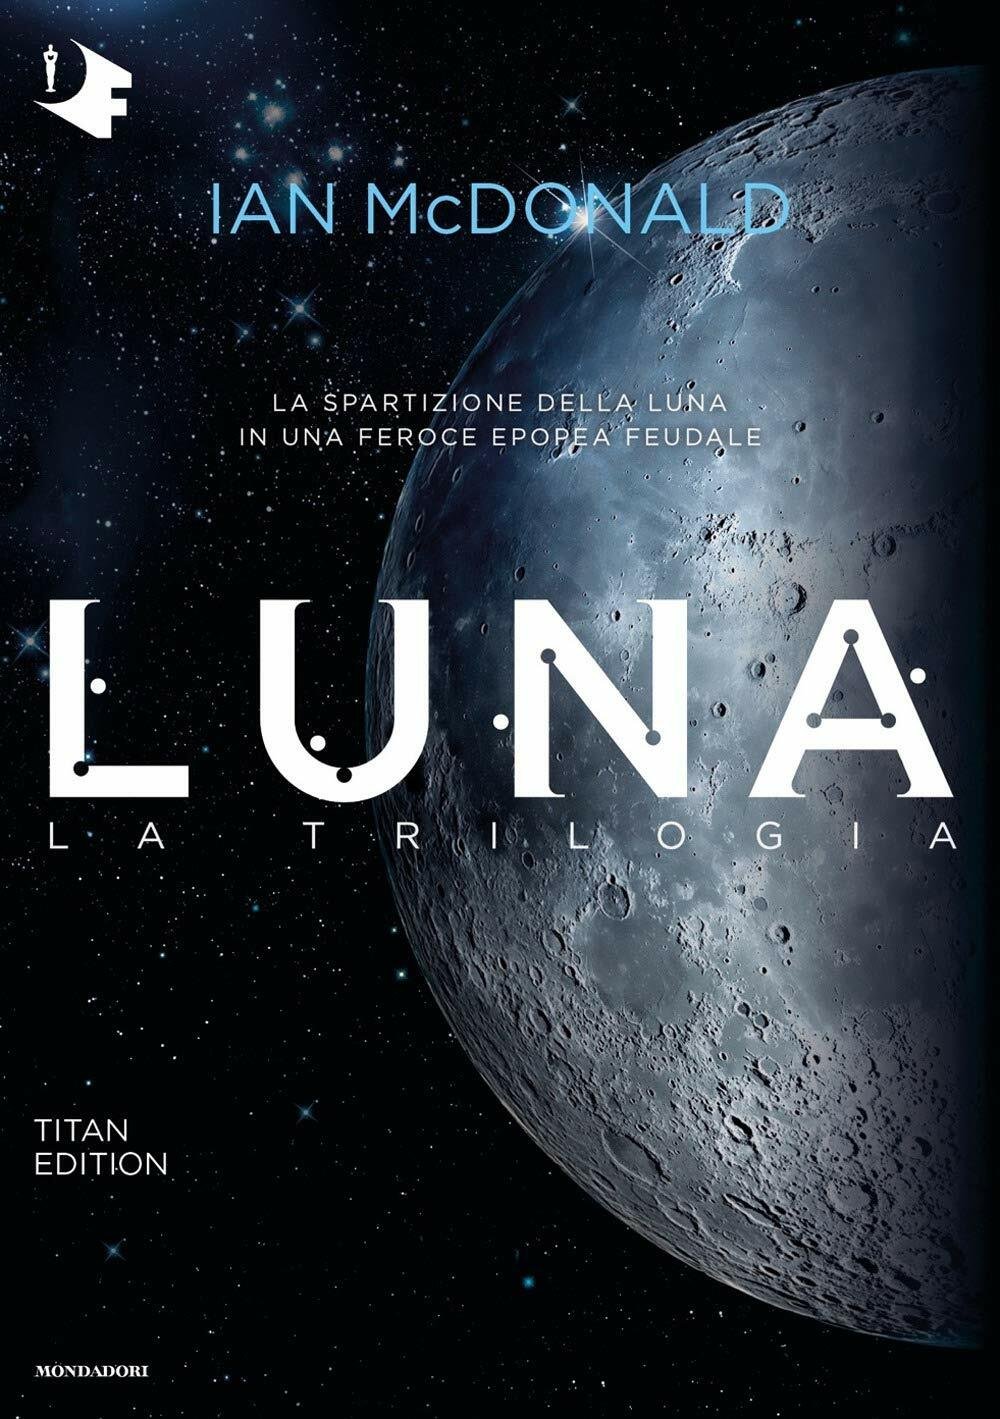 La copertina italiana della trilogia Luna di Ian McDonald